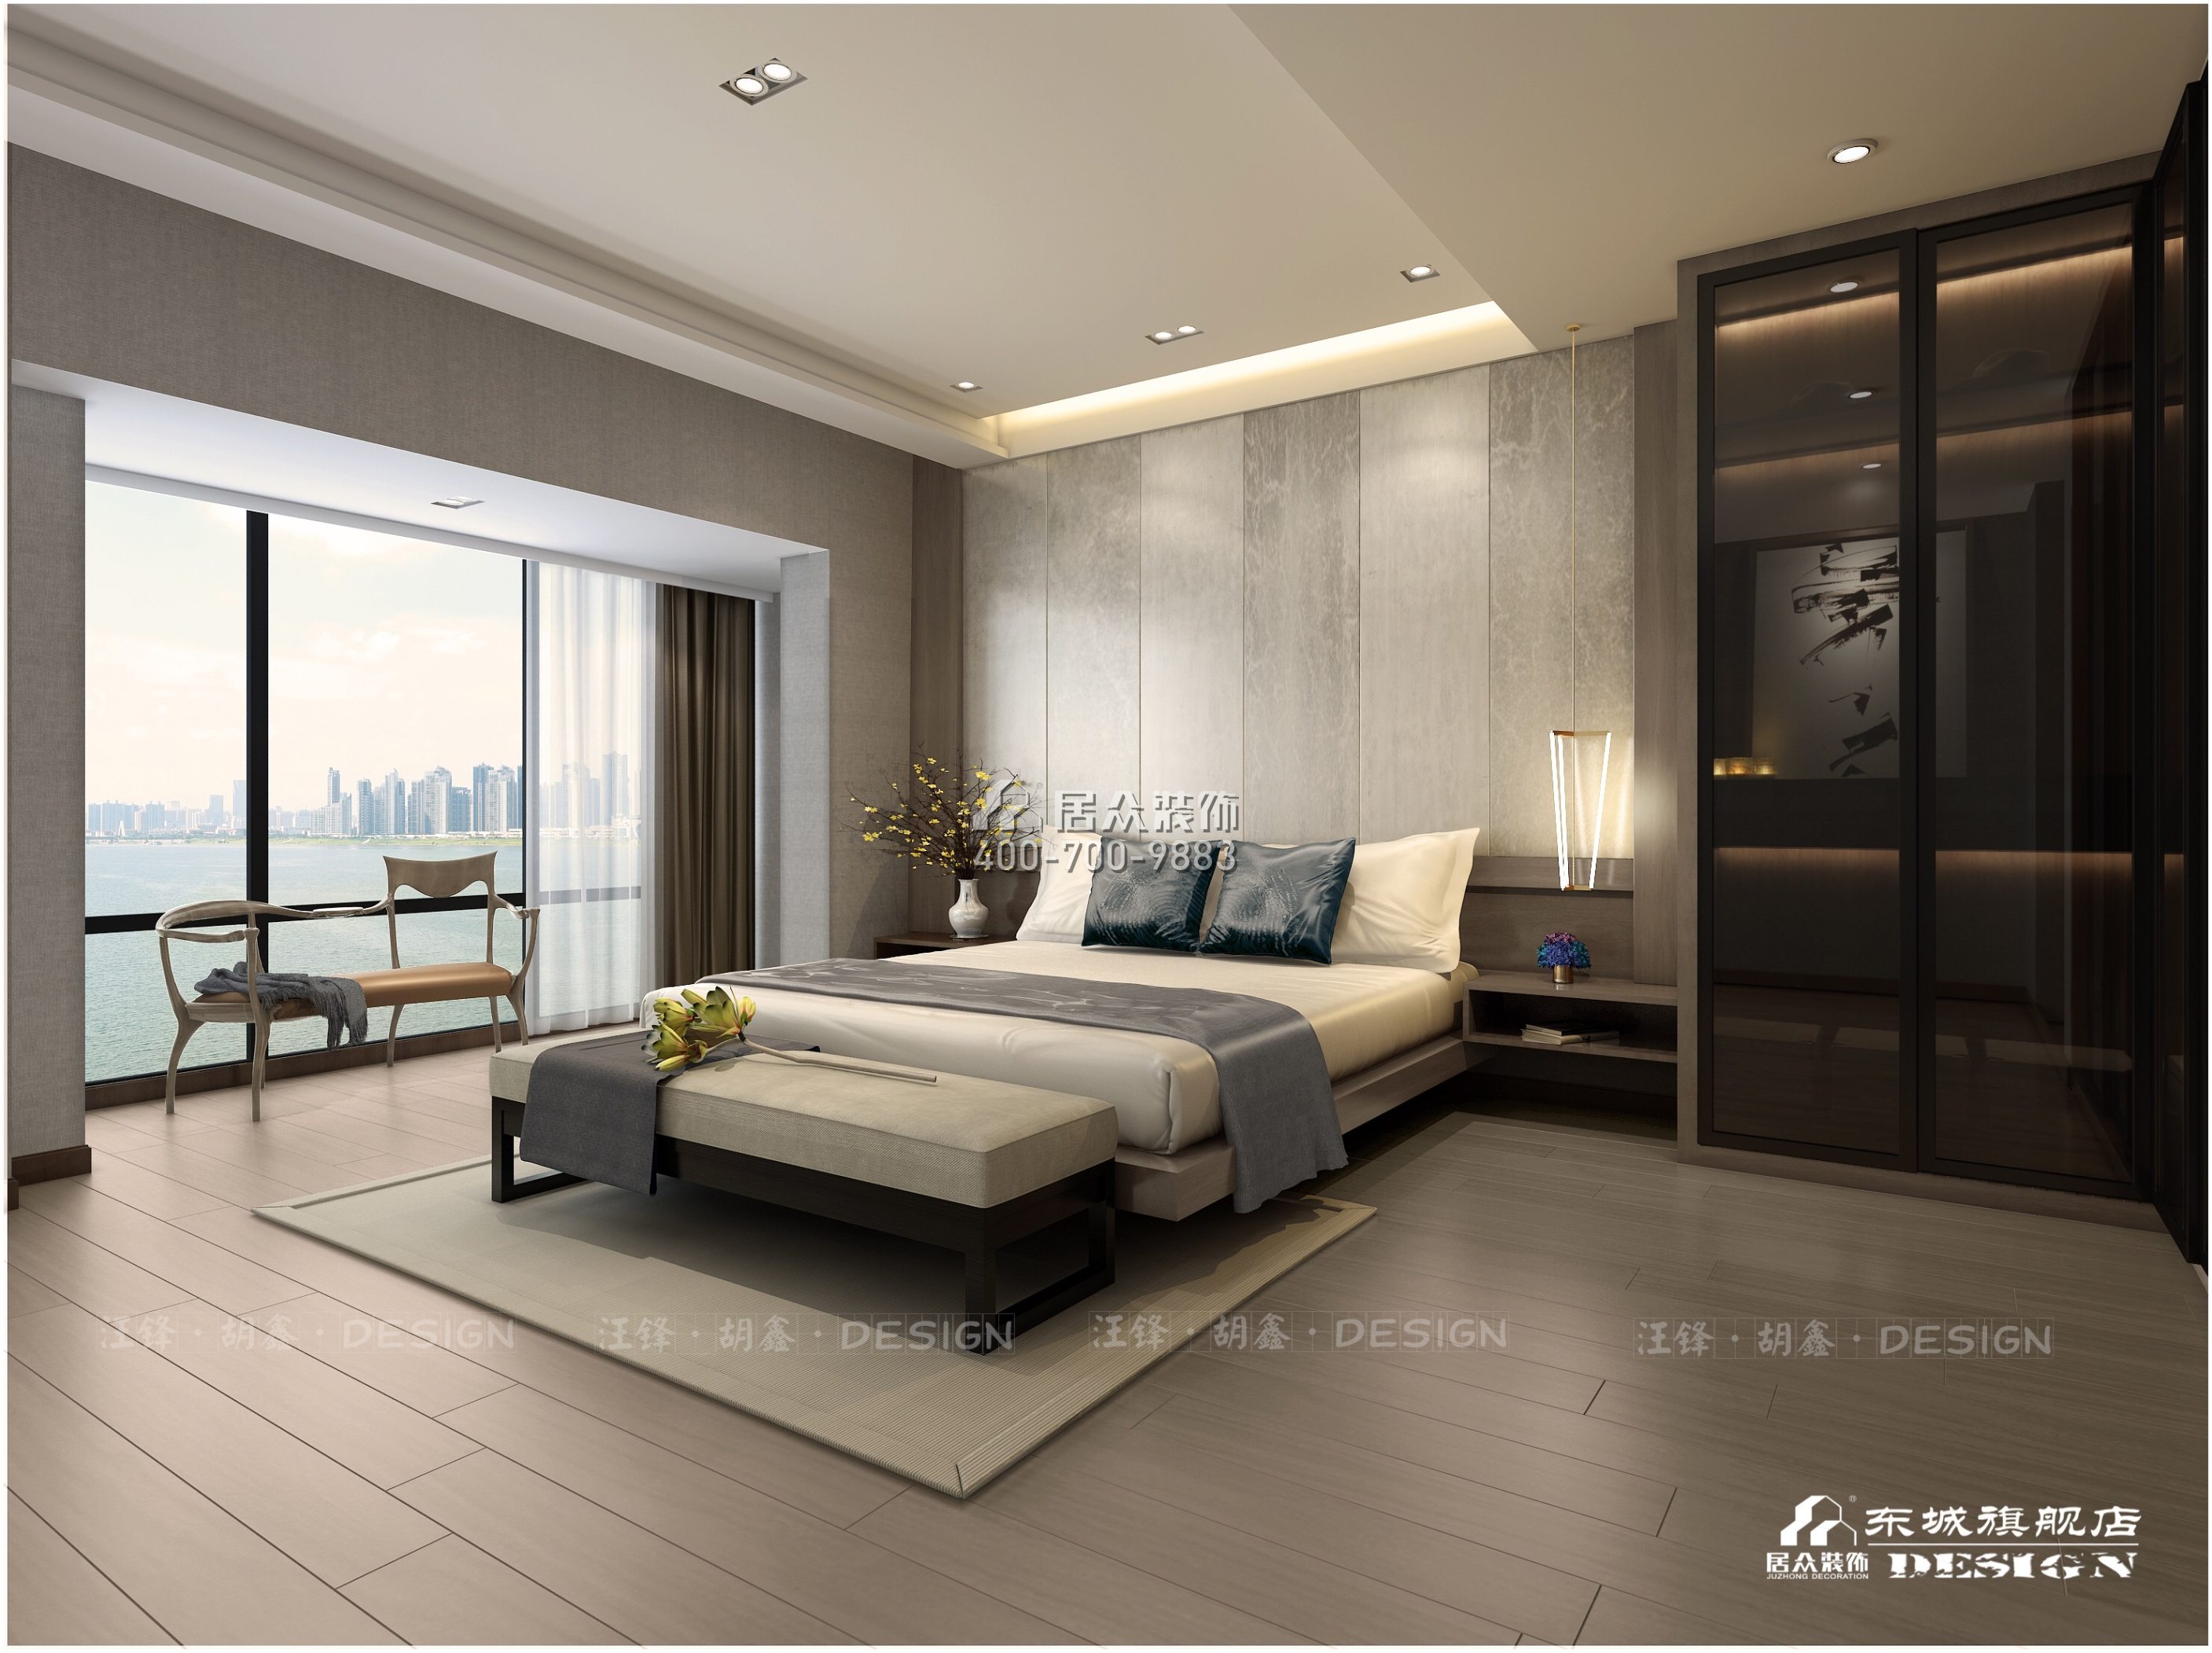 北辰定江洋210平方米现代简约风格平层户型卧室装修效果图